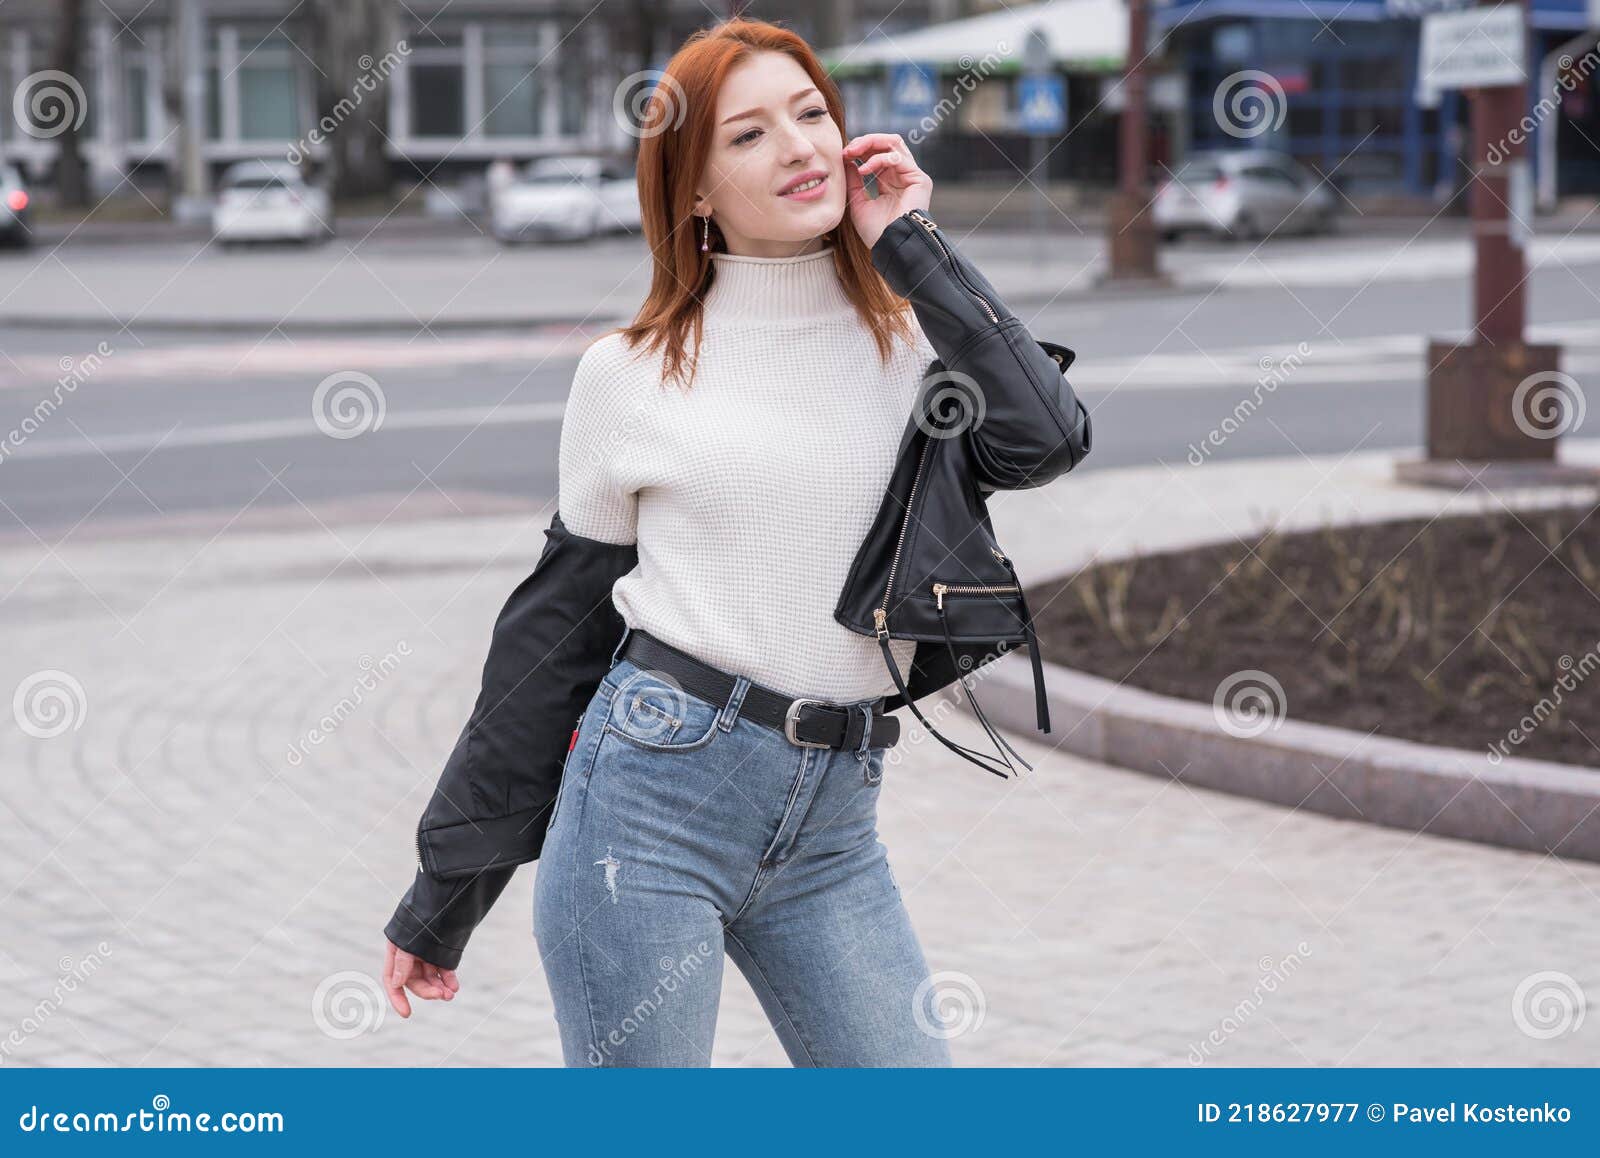 Retrato De Una Hermosa Y Positiva Mujer Pelirroja Con Ropa Estilo Posando Mientras Camina. Imagen de archivo - Imagen de ciudad: 218627977